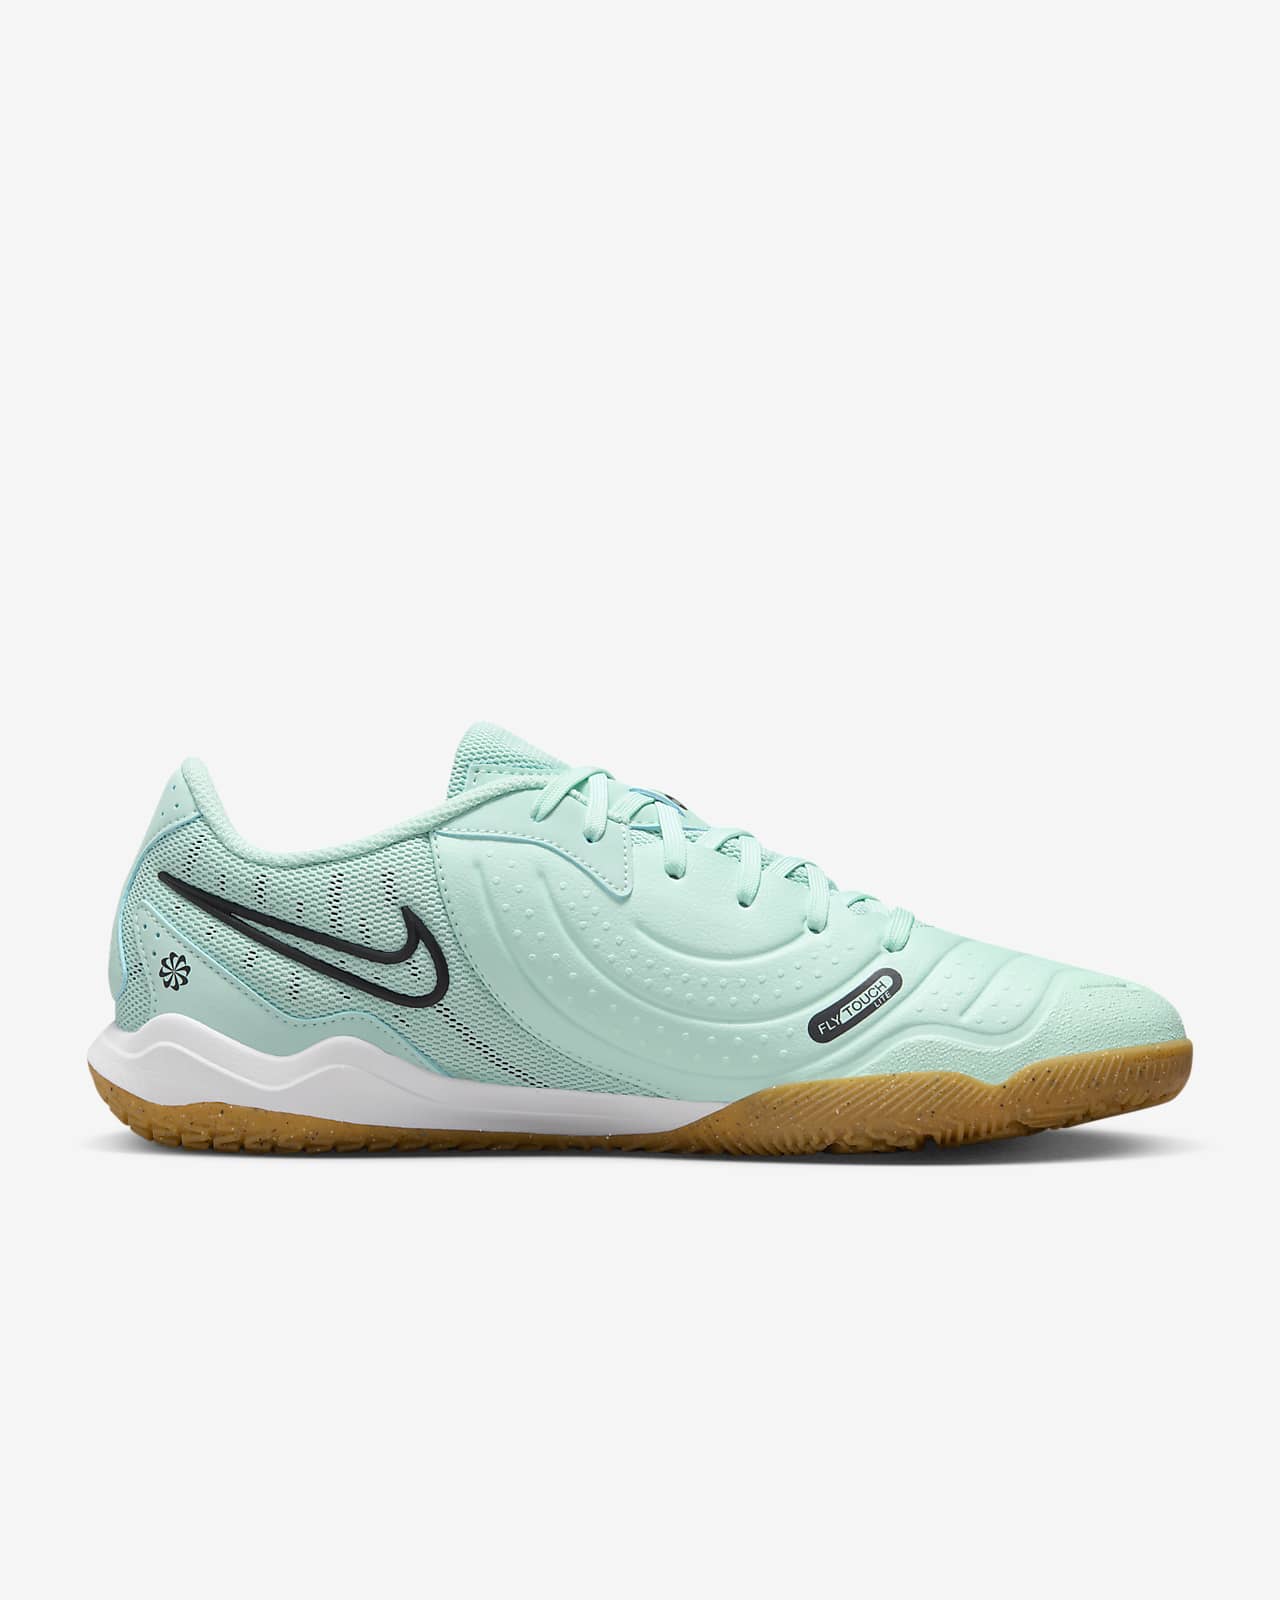 Green Shoes. Nike ZA